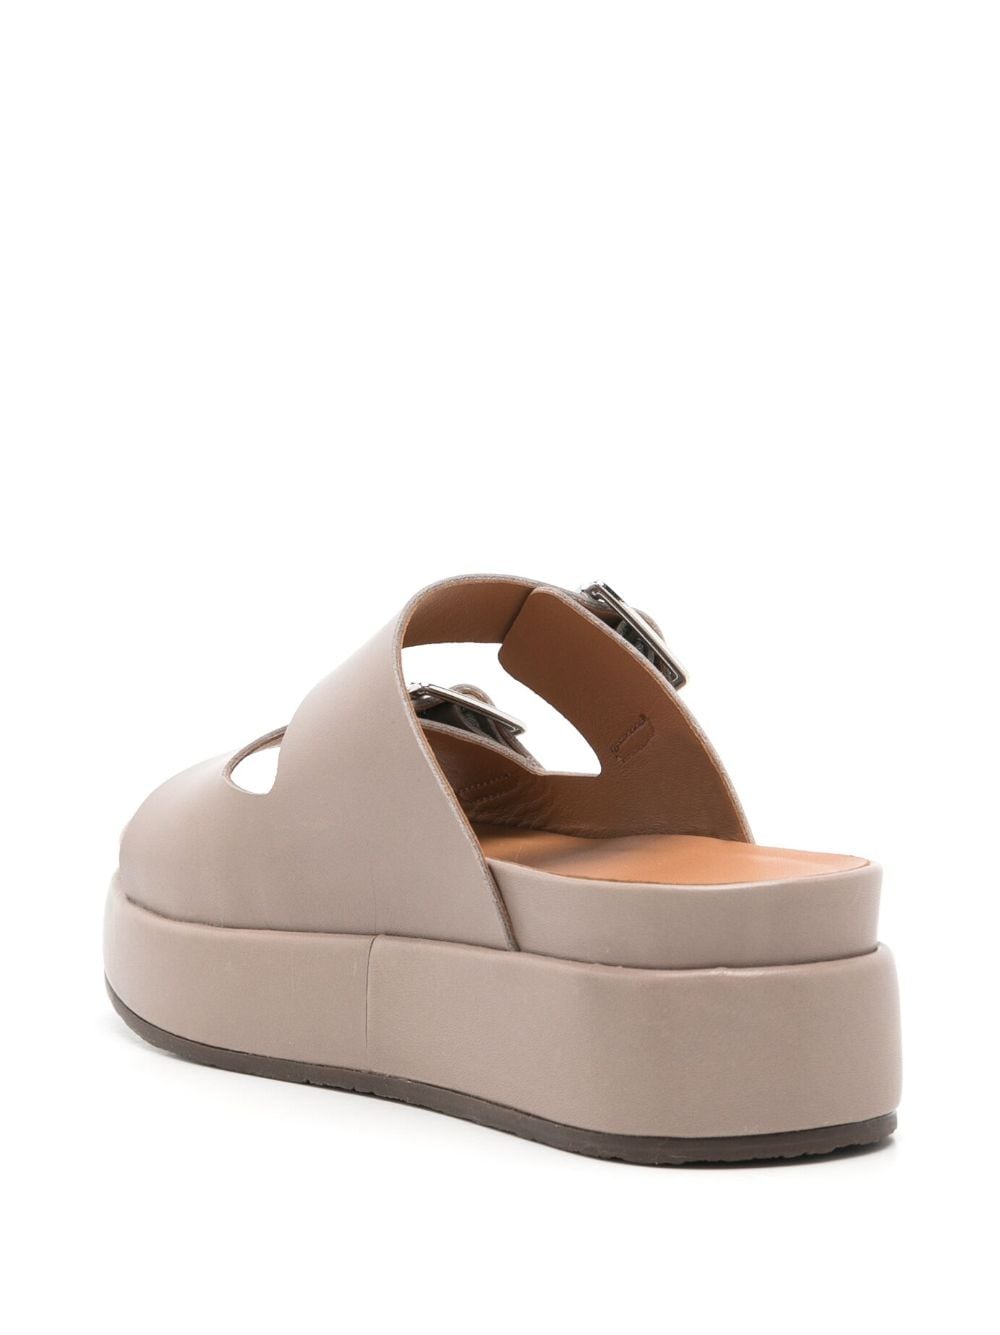 Shop Sarah Chofakian Monte Carlo 45mm Platform Sandals In Neutrals